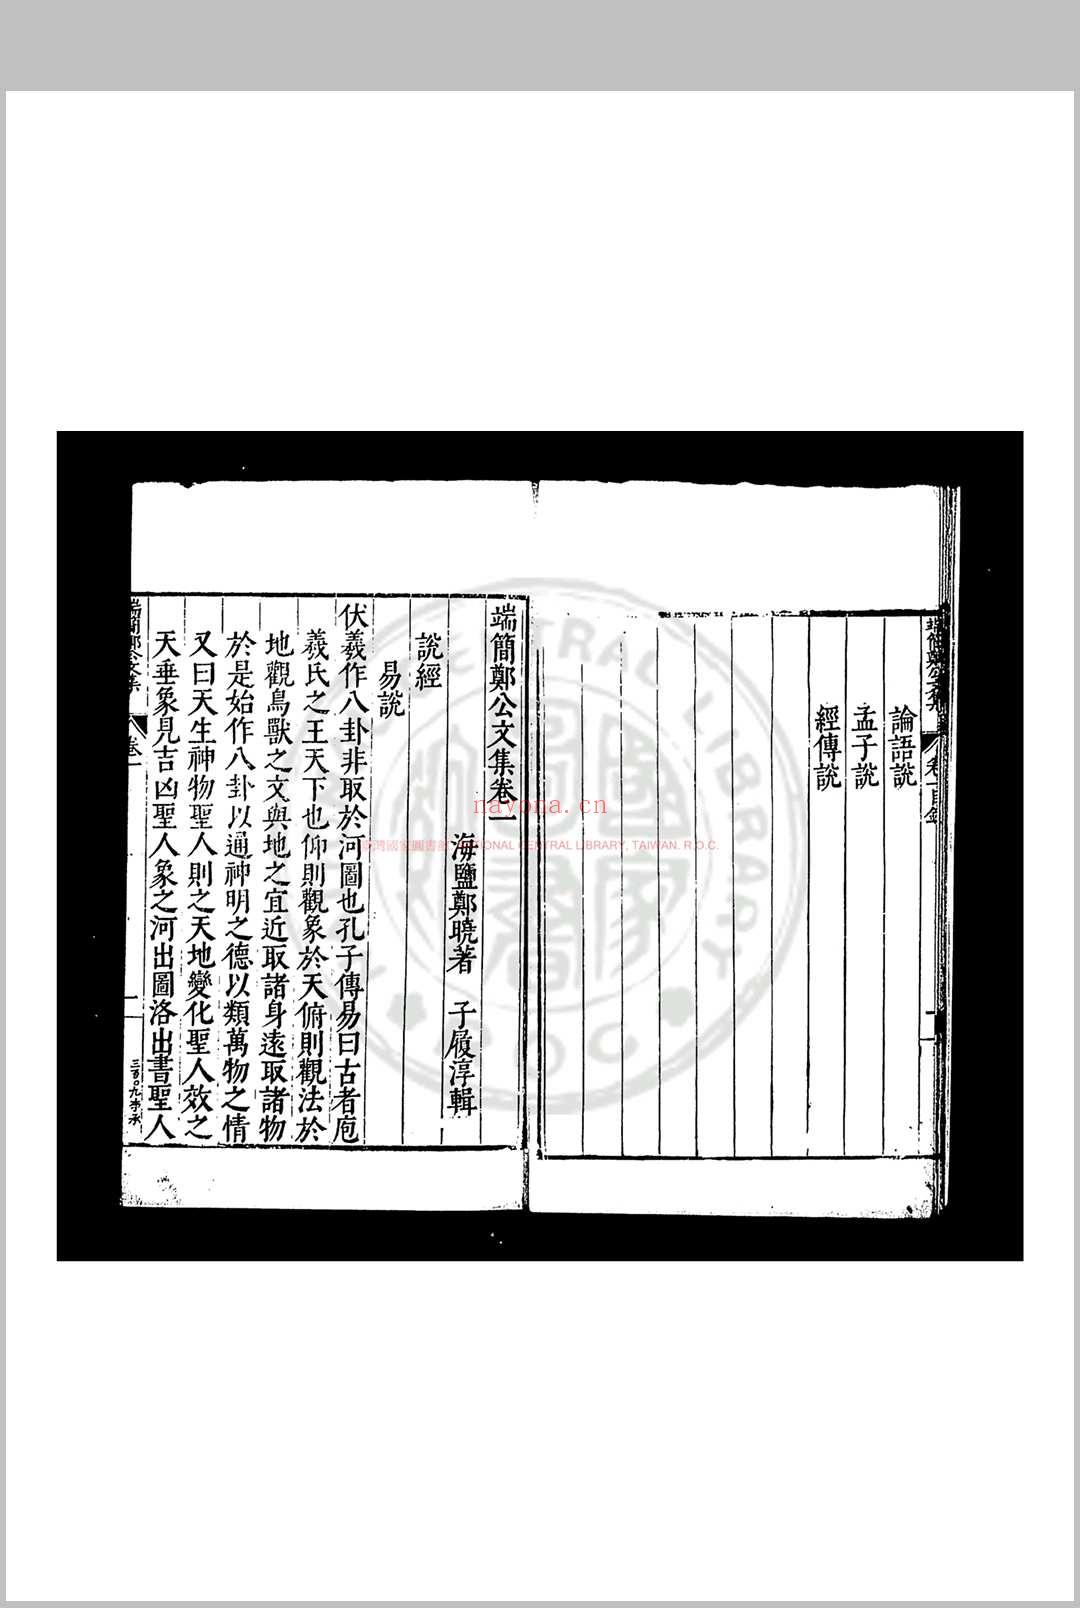 郑端简公文集 (明)郑晓撰 明万历庚子(二十八年, 1600)海盐郑氏家刊本